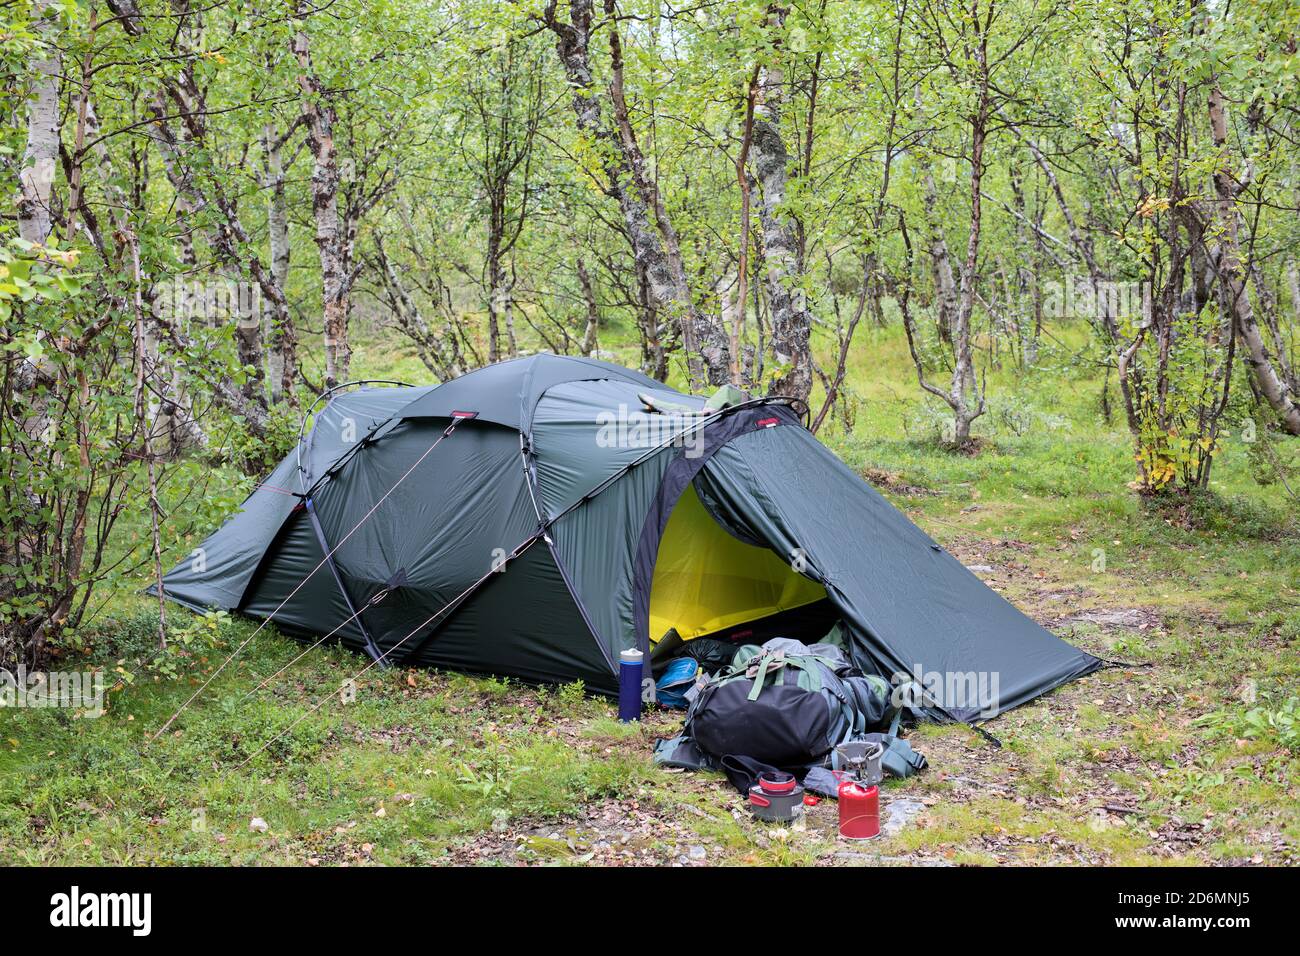 Hilleberg Tarra Zelt in den Wäldern des Vistas-Tals in Kebnekaise  Mountains, Norrbotten, Schweden Stockfotografie - Alamy